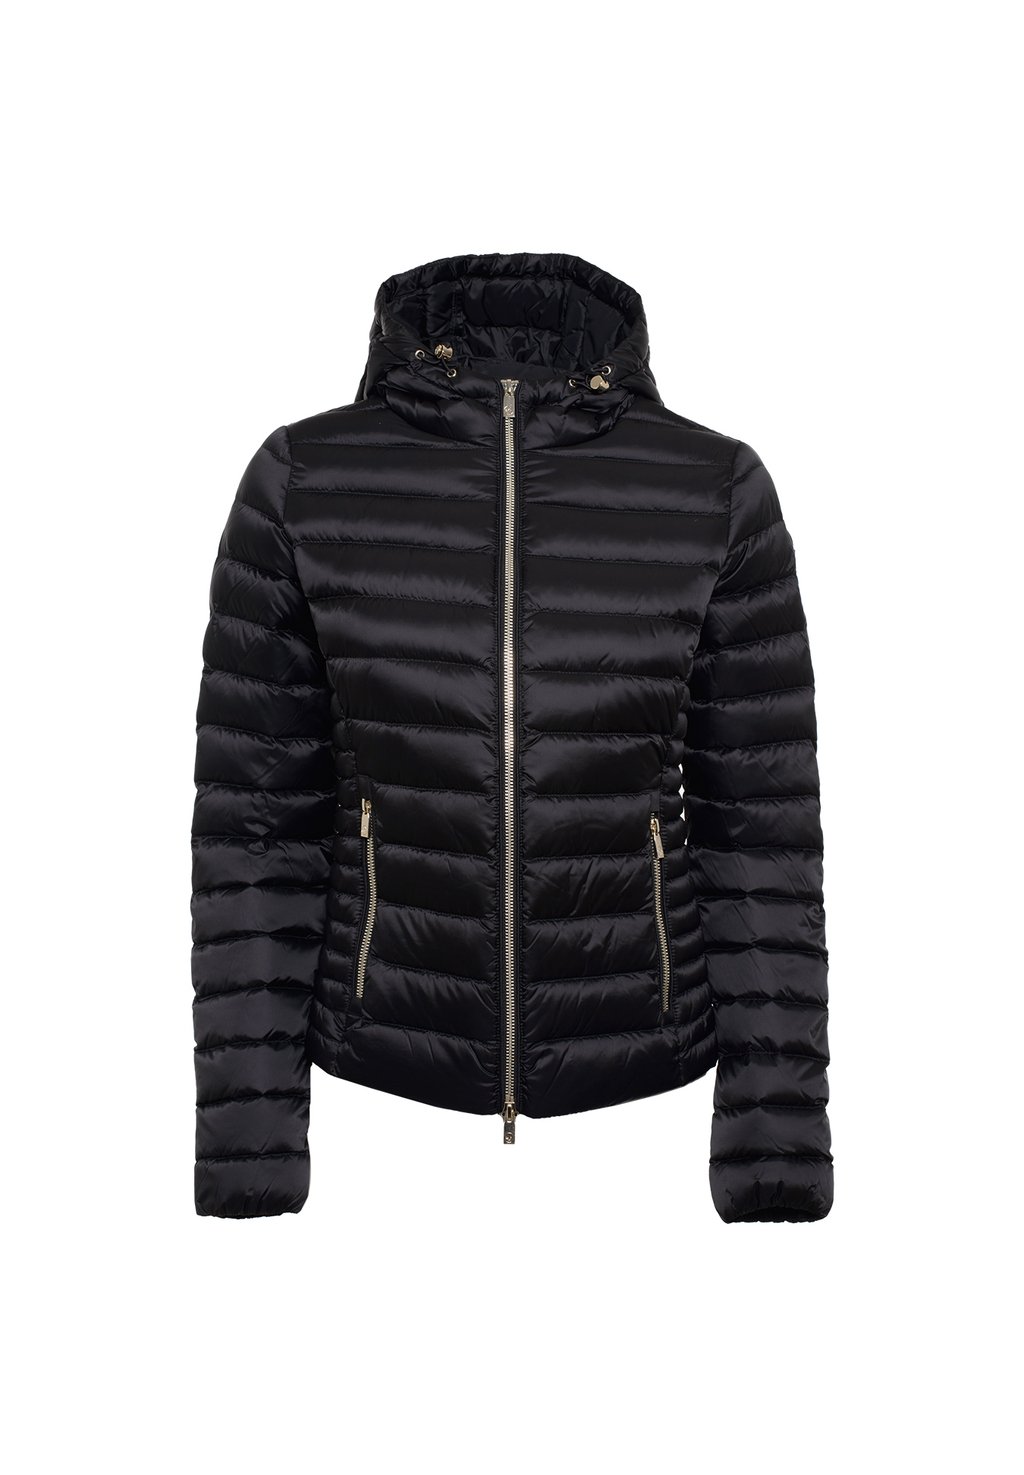 Куртка зимняя Aghata Ciesse Piumini, черный цена и фото